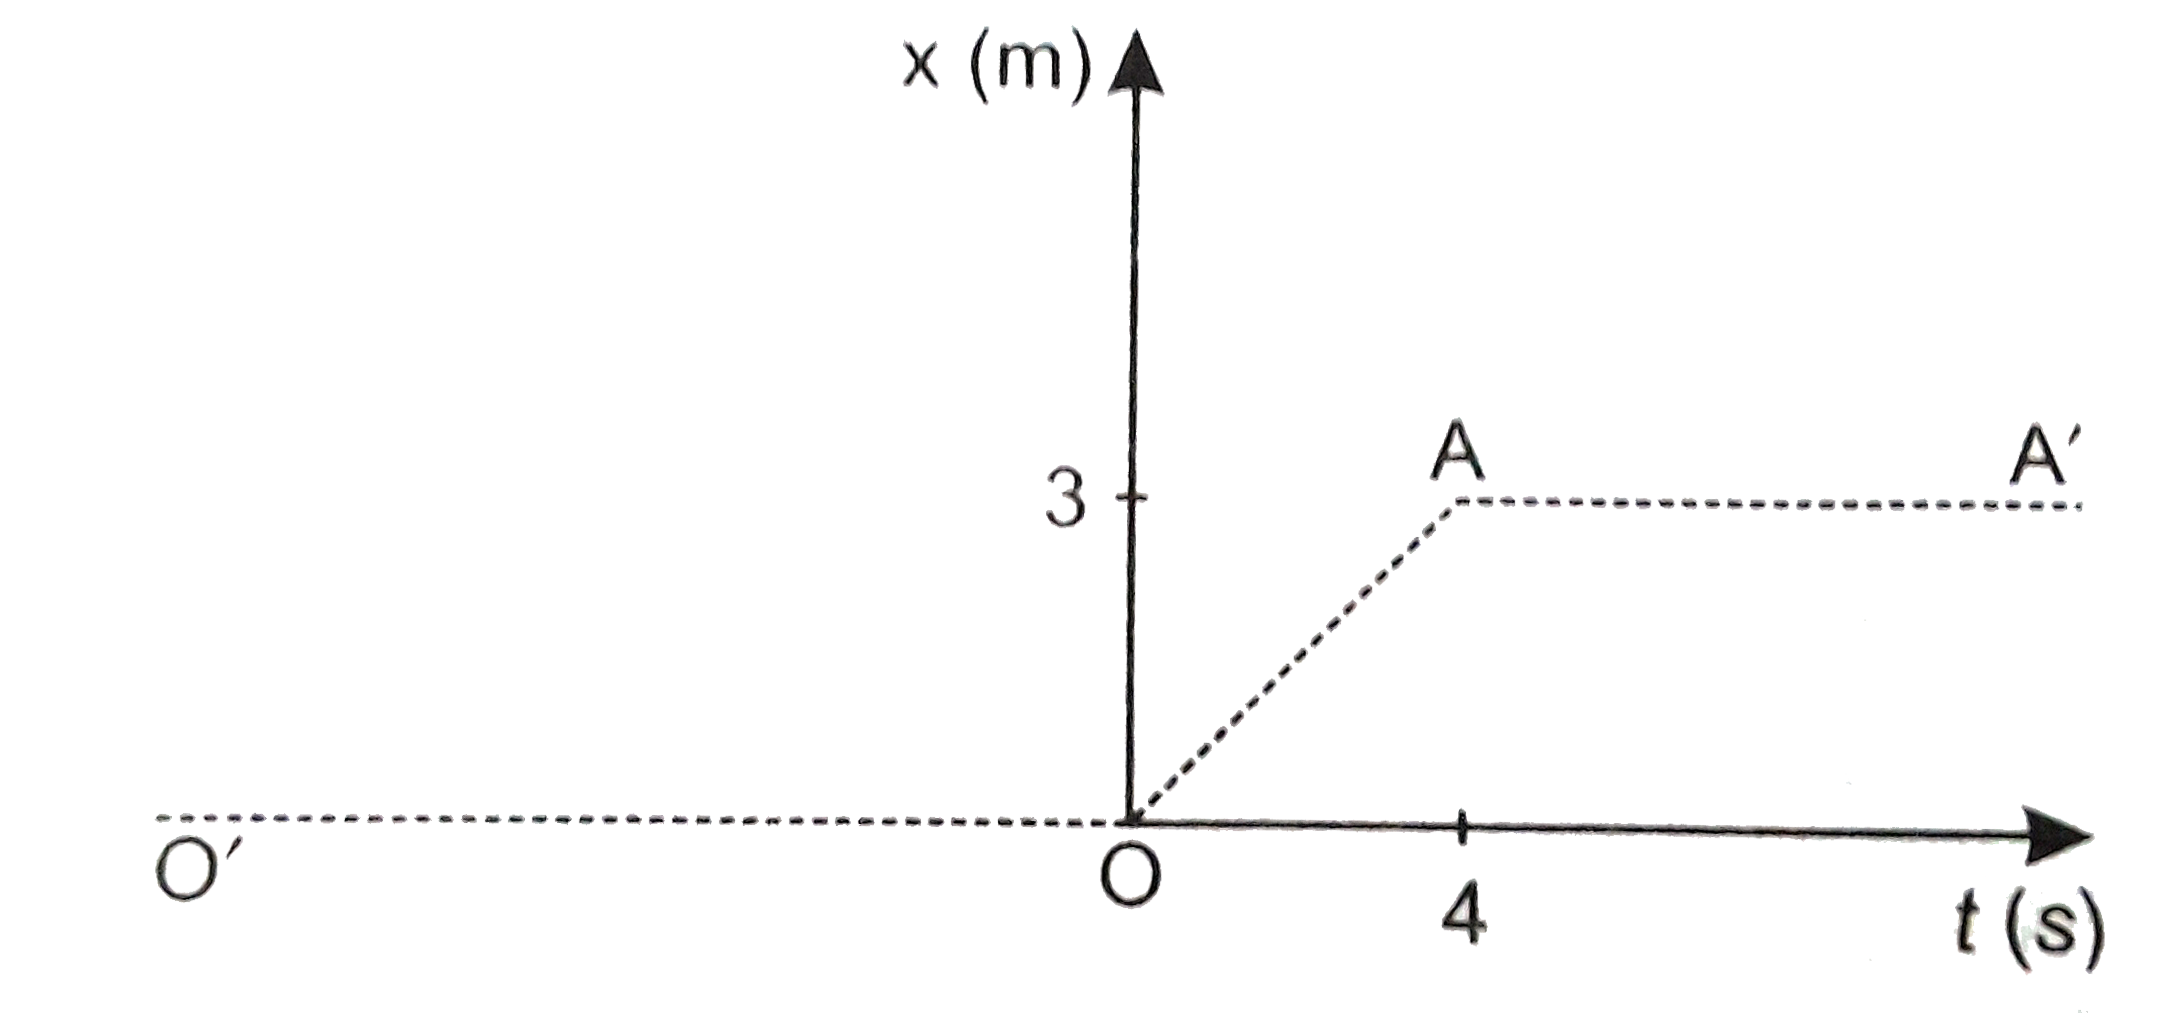 चित्र में 4 किग्रा संहति के किसी पिण्ड का स्थिति - समय ग्राफ दर्शाया गया हैं -   (a)  t lt 0, t gt 4 , 0 lt t lt 4s के लिए पिण्ड पर आरोपित बल क्या हैं ?   (b) t = 0   तथा t = 4s  पर आवेग क्या हैं  ( केवल एकविमीय गति पर विचार कीजिए )